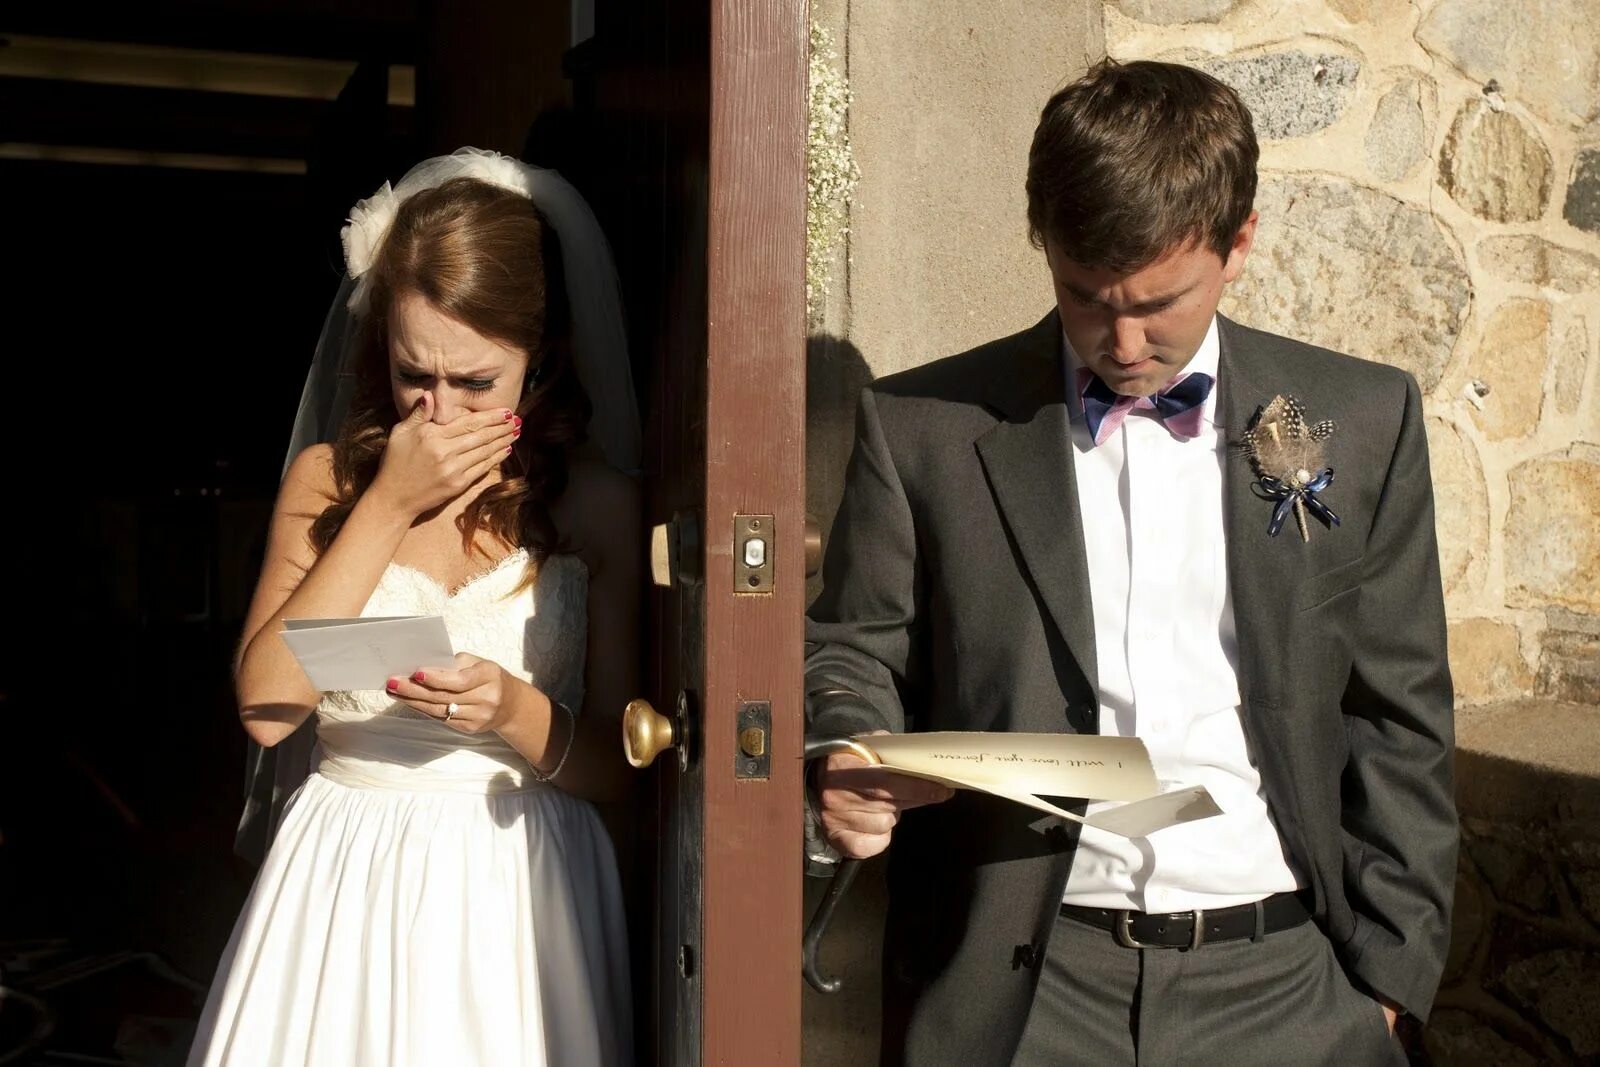 Мужчина и женщина свадьба. Невеста изменяет жениху на свадьбе. Парень перед свадьбой. Фотосессия перед свадьбой жених и невеста. Пока жених спал